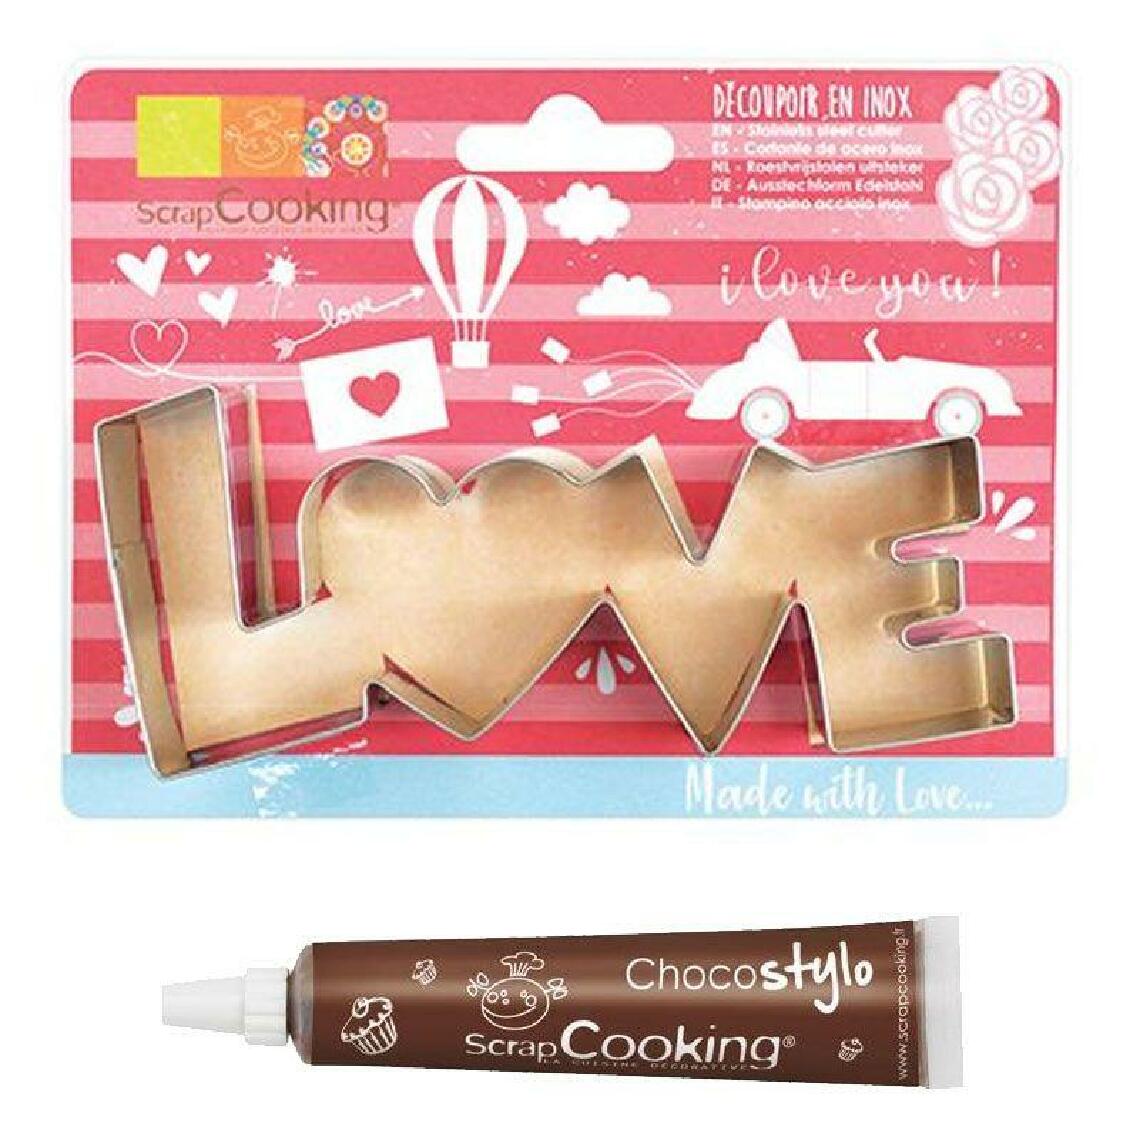 Scrapcooking - Découpoir à biscuits en inox Love + Stylo chocolat - Kits créatifs